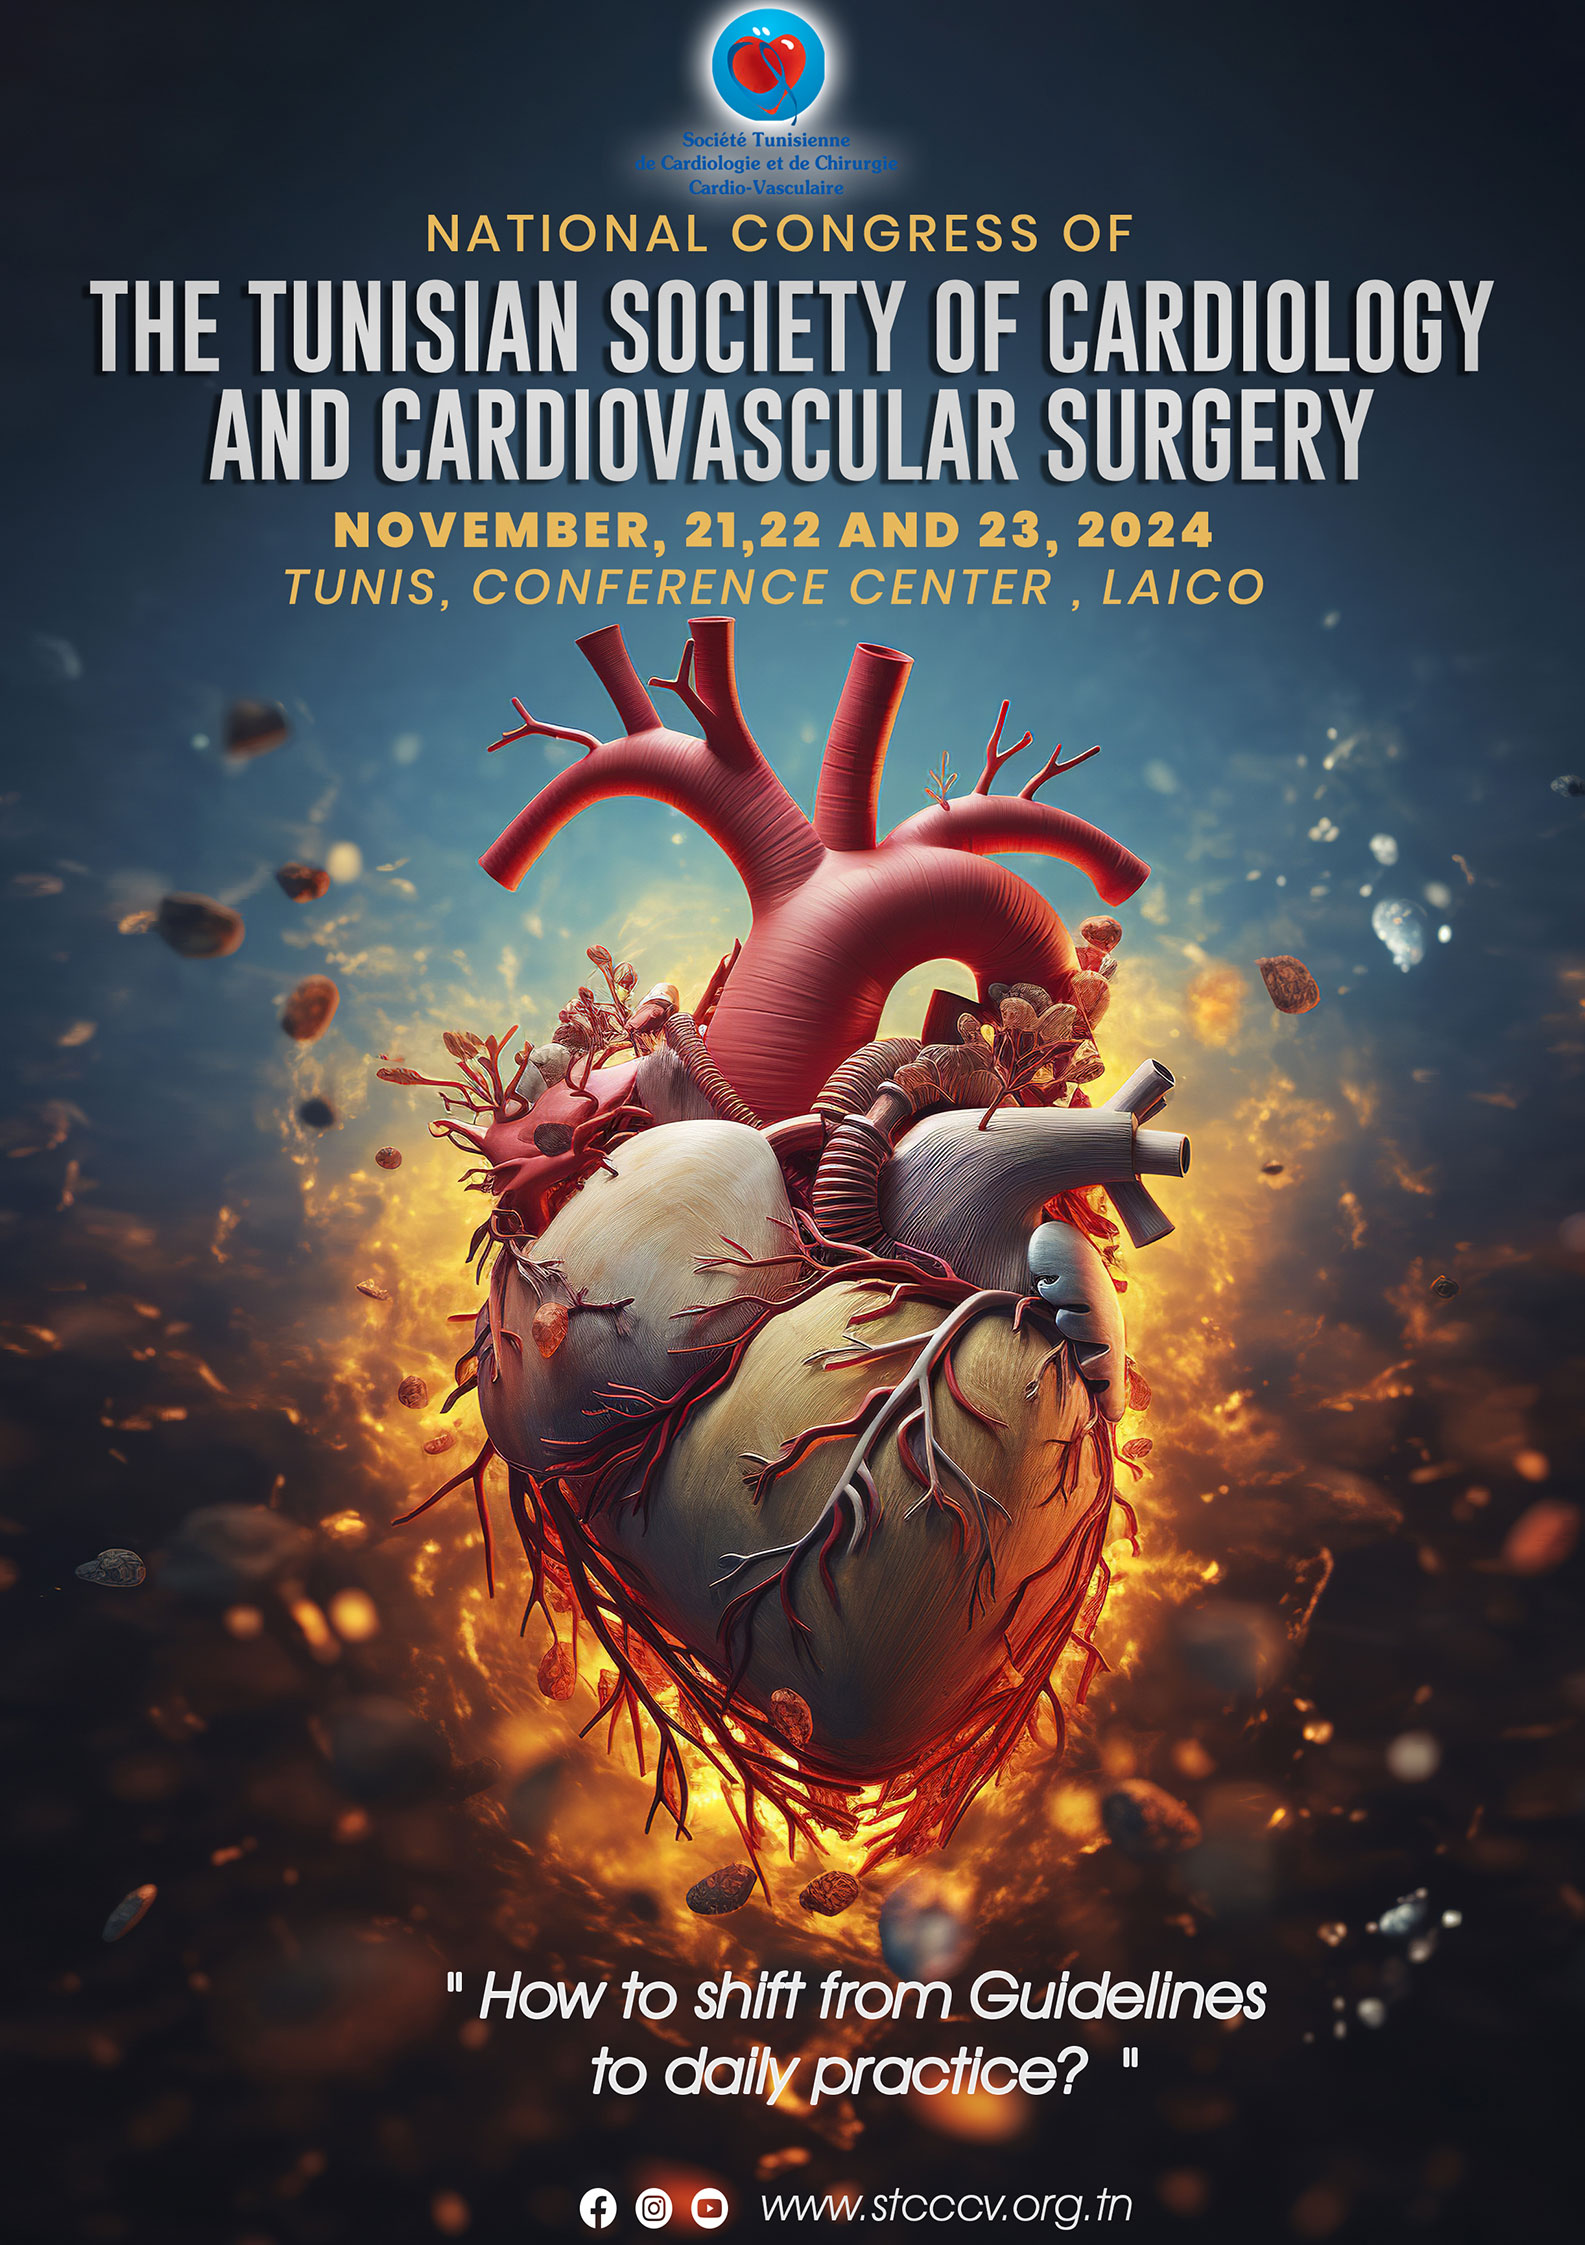 Congrès National de la Société Tunisienne de Cardiologie et de Chirurgie Cardiovasculaire ” Comment implémenter les recommandations dans notre pratique ”